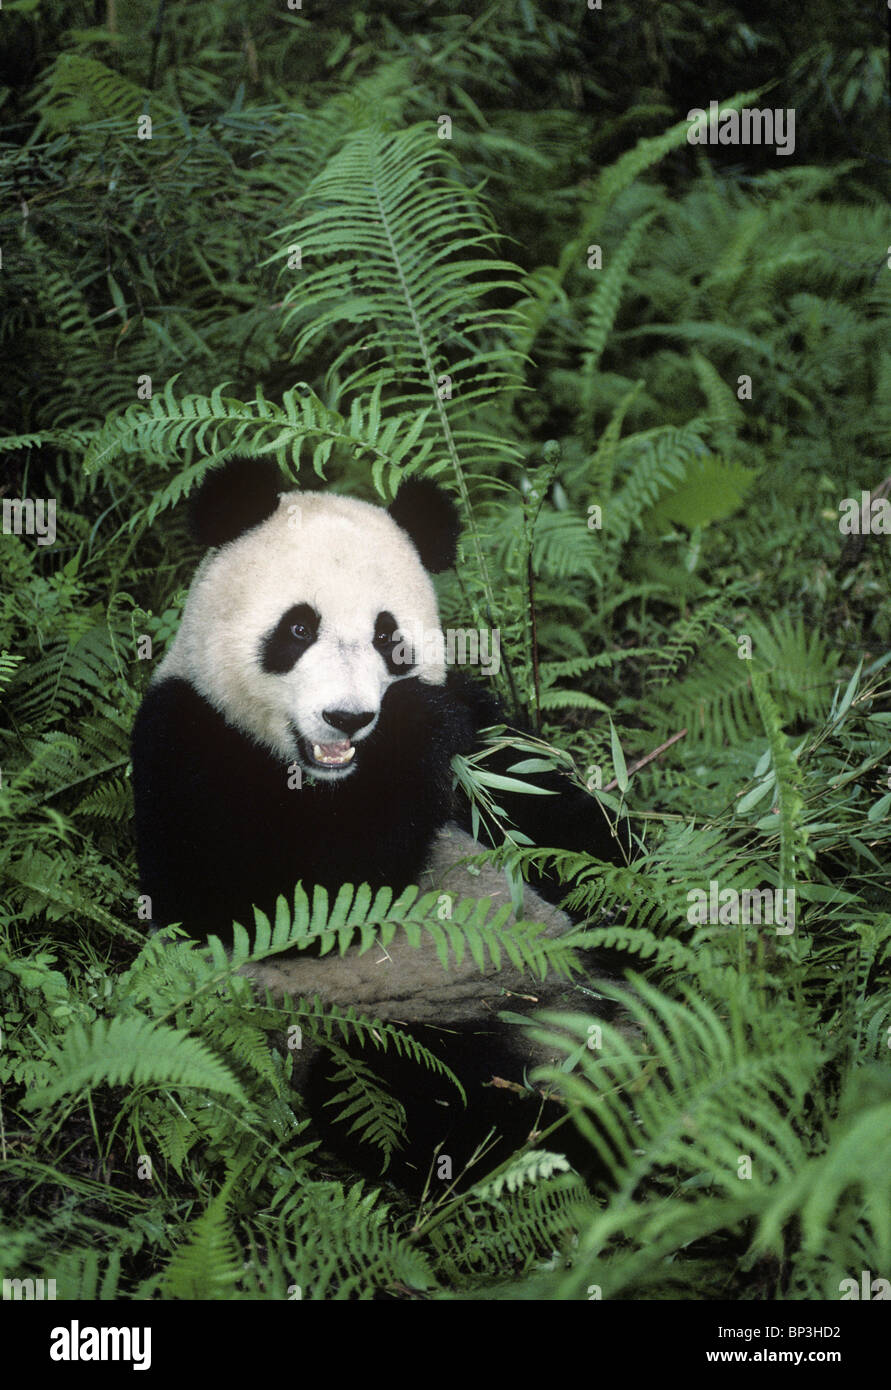 El panda gigante se alimenta de bambú entre helechos, Wolong, China Foto de stock